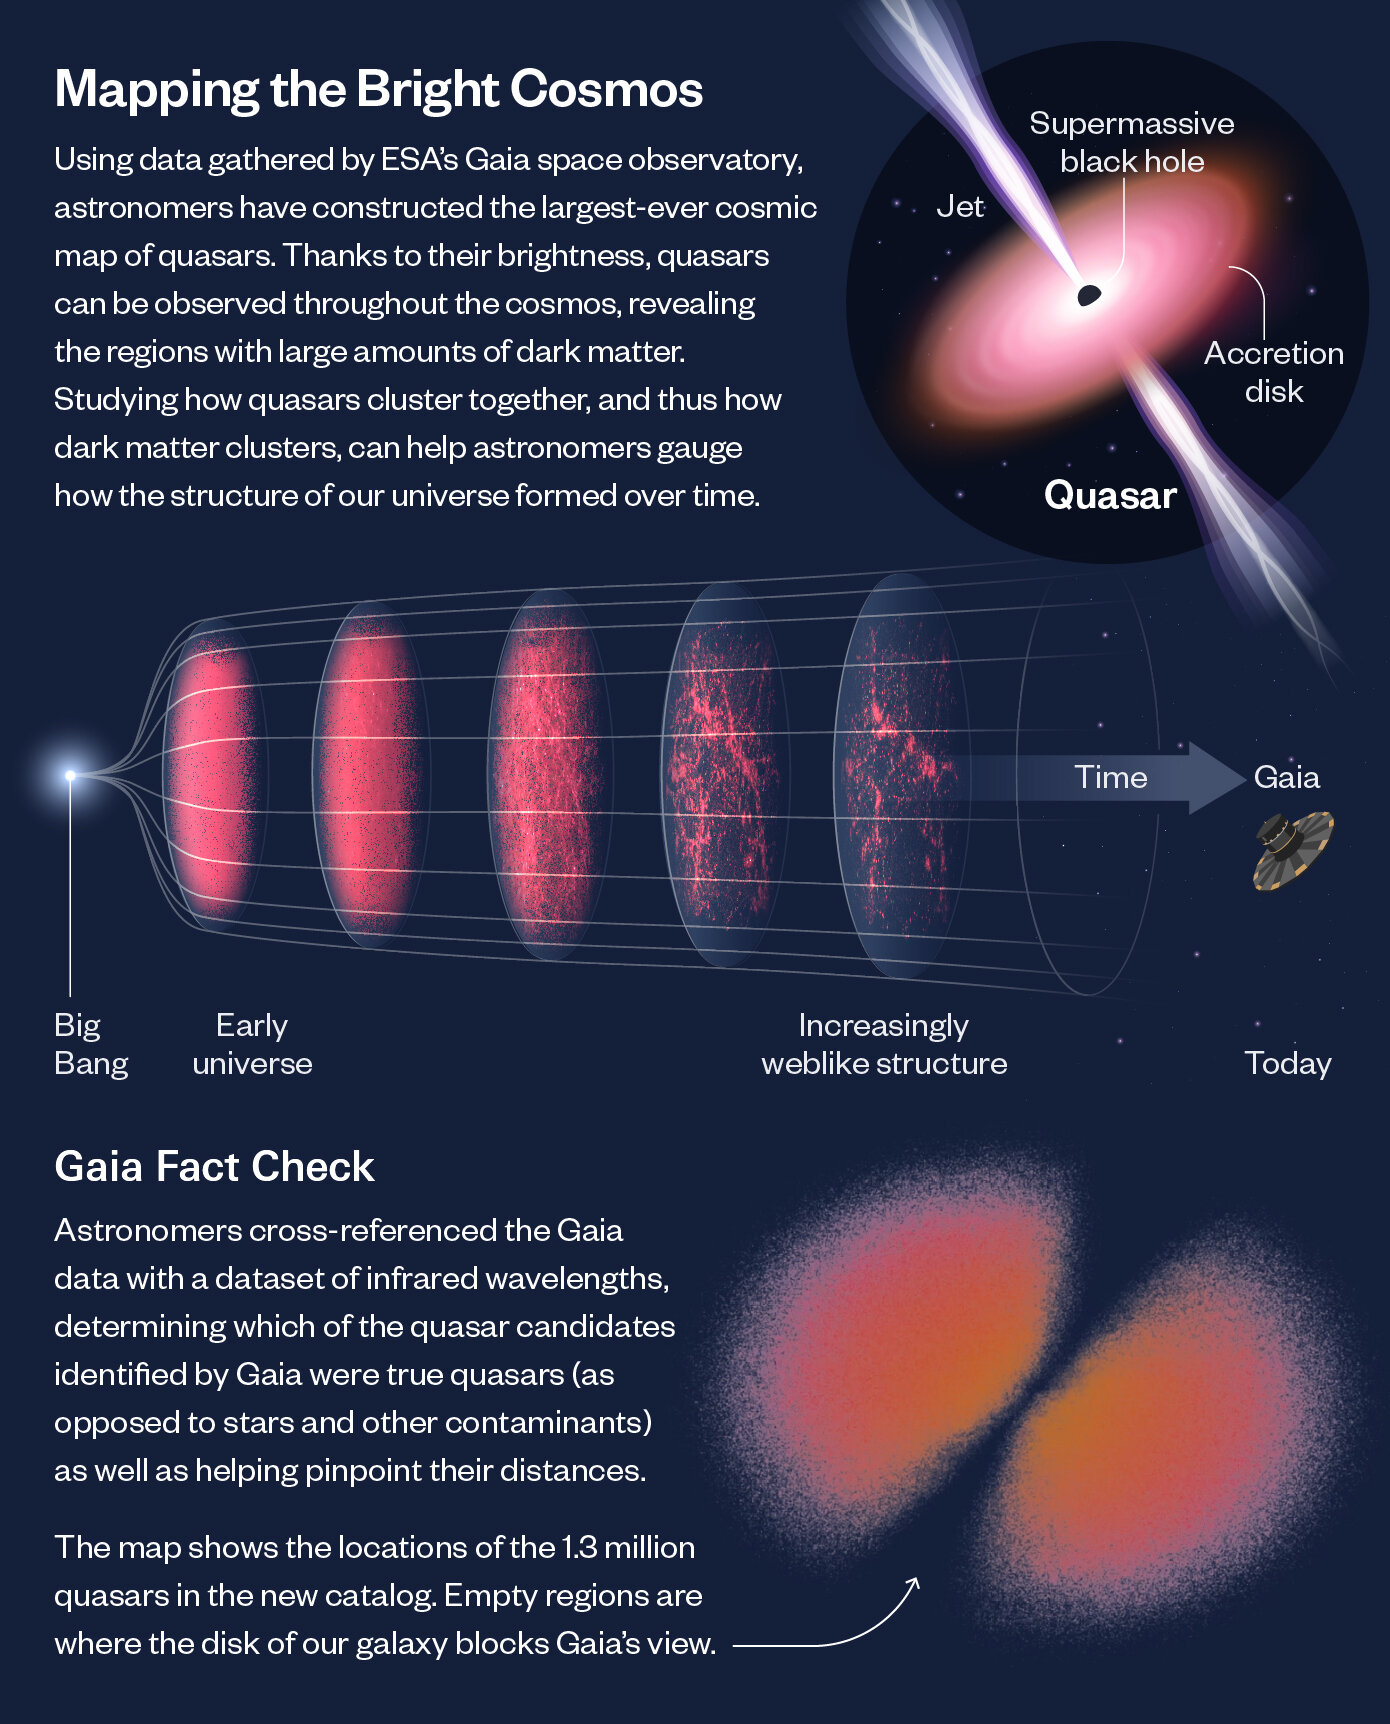 Naukowcy przedstawili największą w historii mapę kwazarów we Wszechświecie